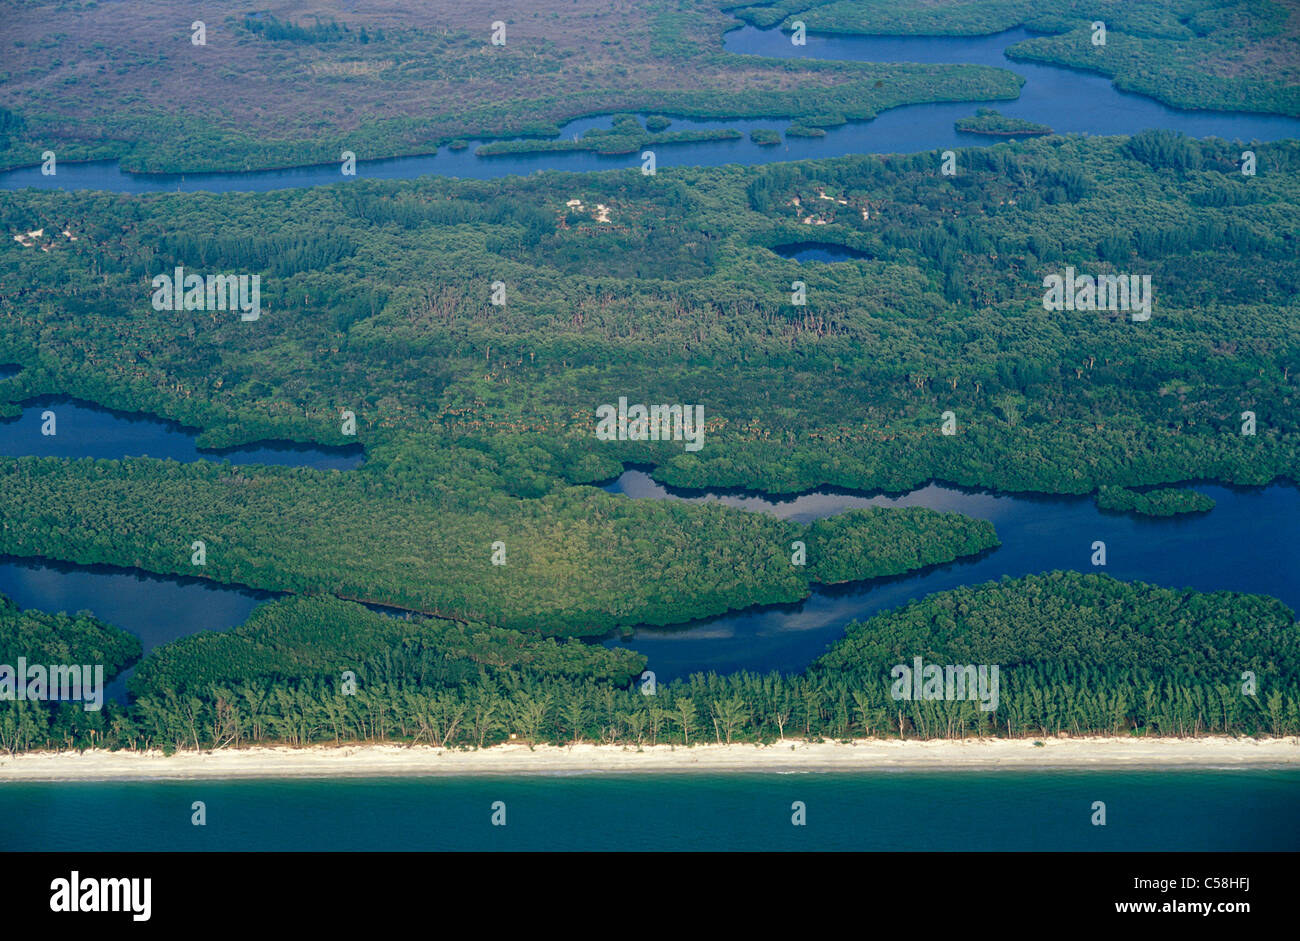 Vista aerea, spiaggia, vicino Napoli, costa del Golfo della Florida, Stati Uniti d'America, Stati Uniti, America, palude, natura Foto Stock